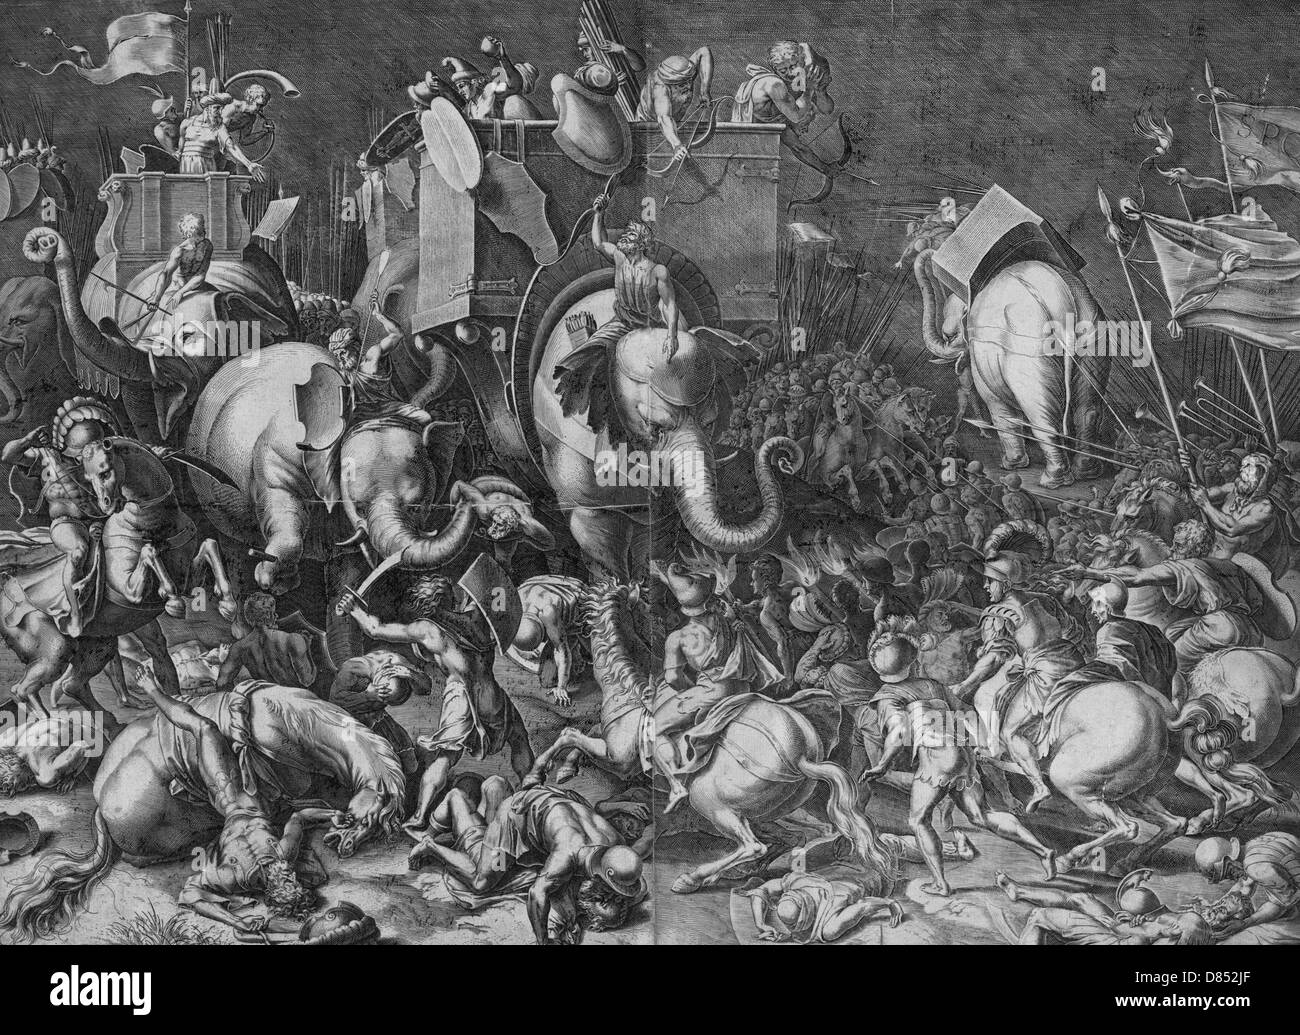 Die Schlacht von Zama, Oktober, 202 v. Chr. zwischen Hannibal und Rom Scipio Africanus auf dem Pferderücken mit römischen Soldaten engagieren Hannibal, Reiten ein Kriegselefant, während der Schlacht von Zama. Stockfoto